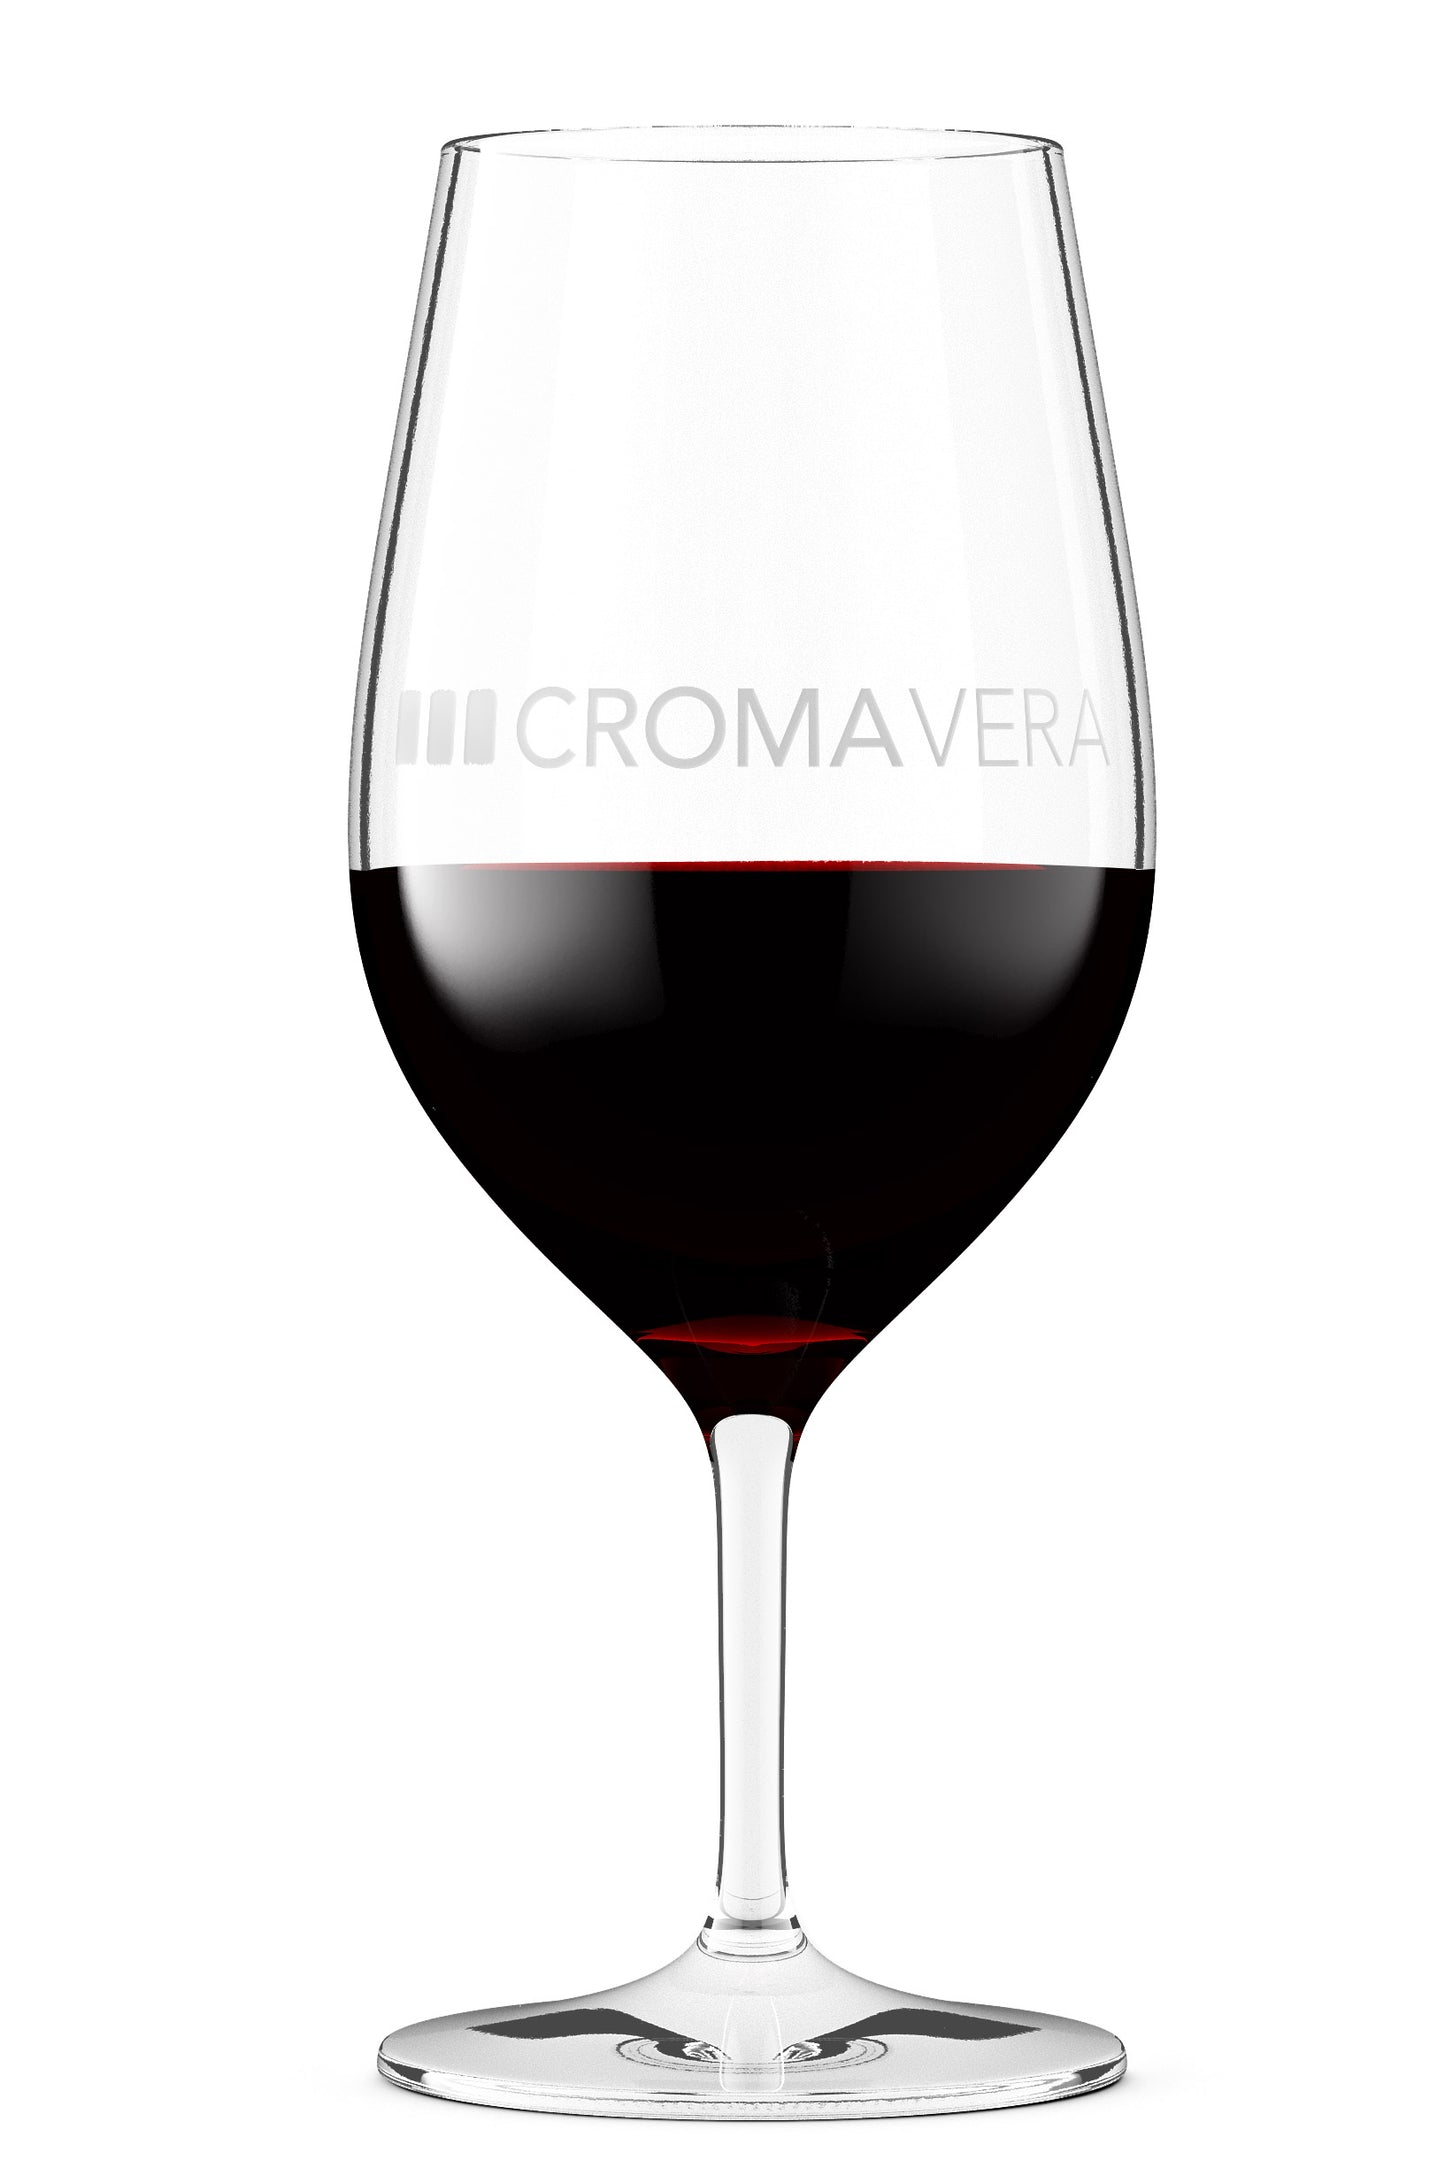 Croma Vera Cabernet Sauvignon in a wine glass